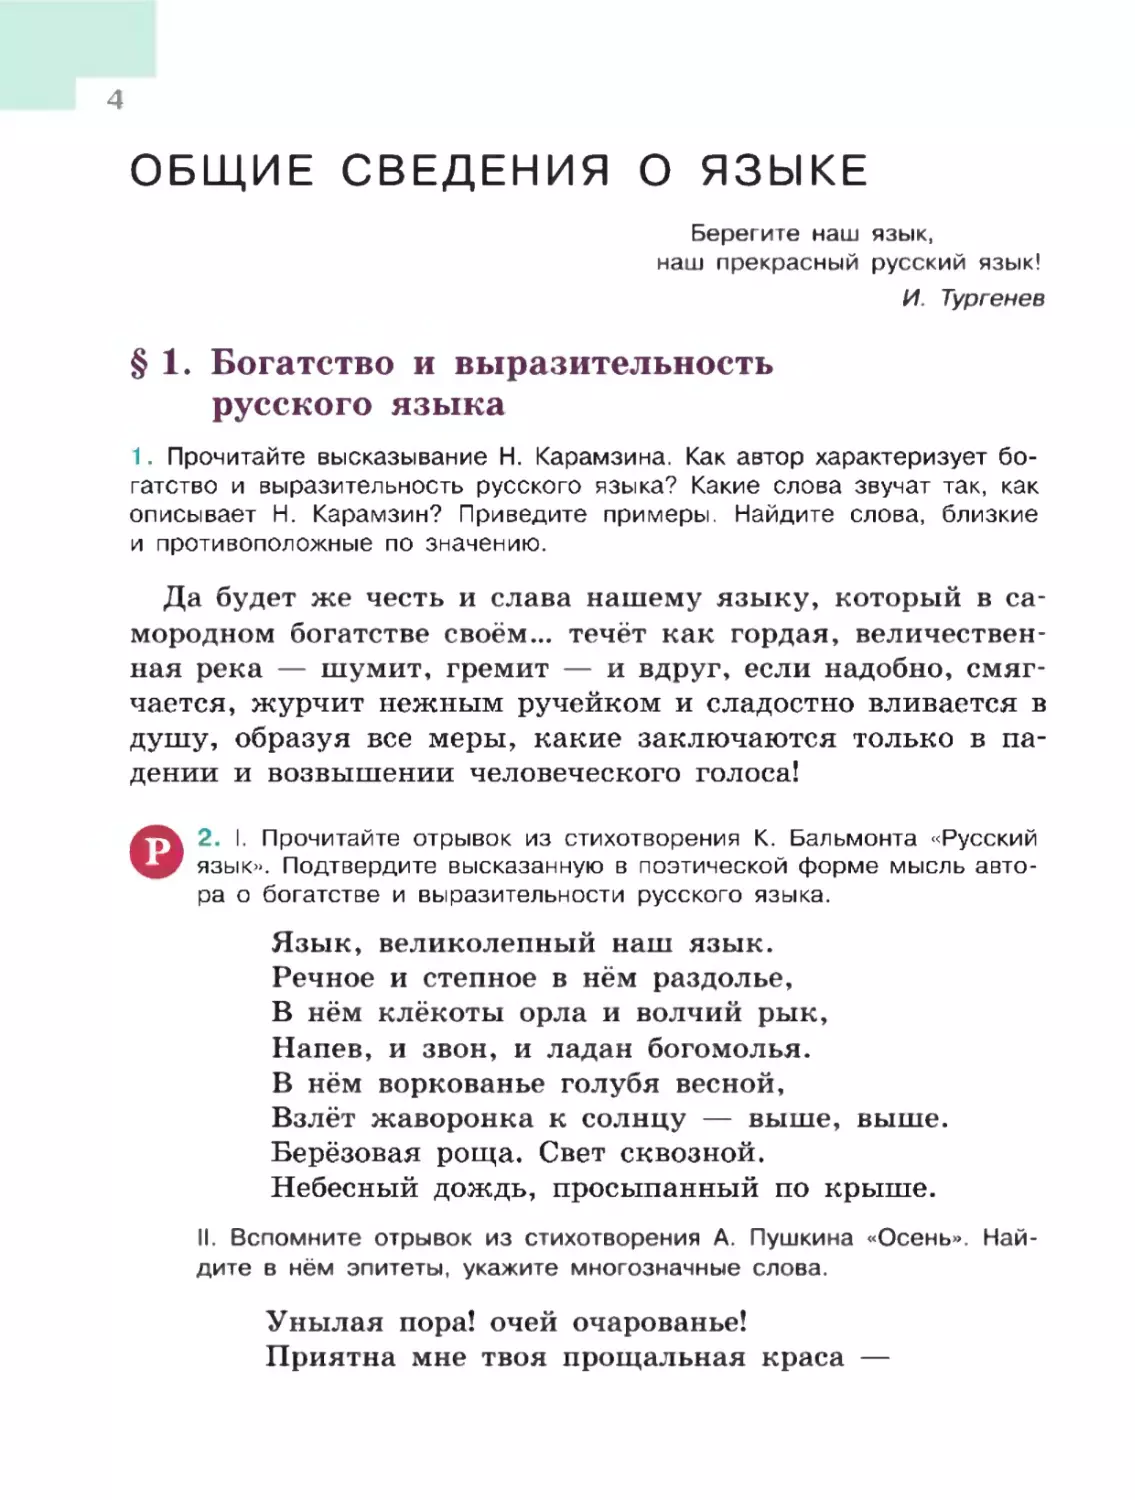 Общие сведения о языке
§ 1. Богатство и выразительность русского языка